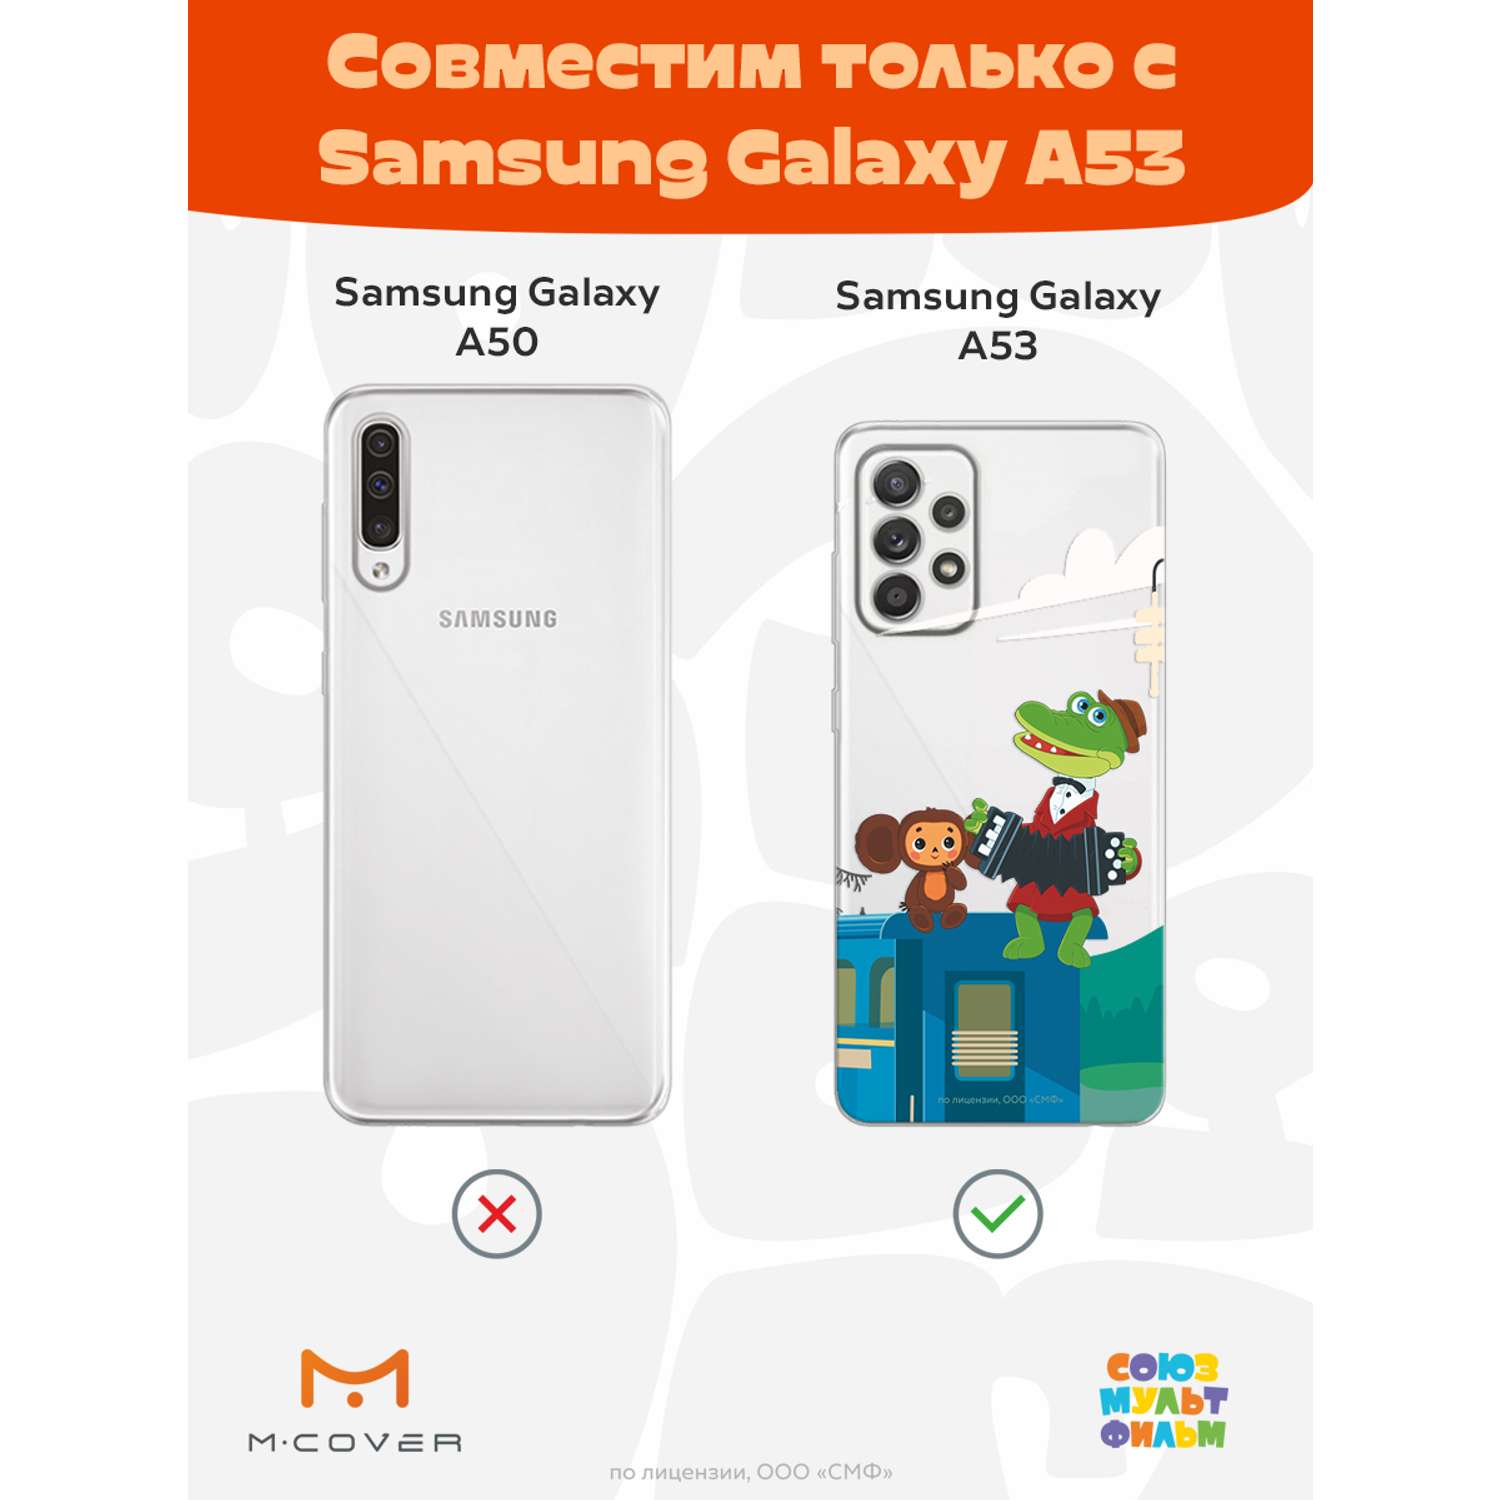 Силиконовый чехол Mcover для смартфона Samsung Galaxy A53 Союзмультфильм Голубой вагон - фото 5